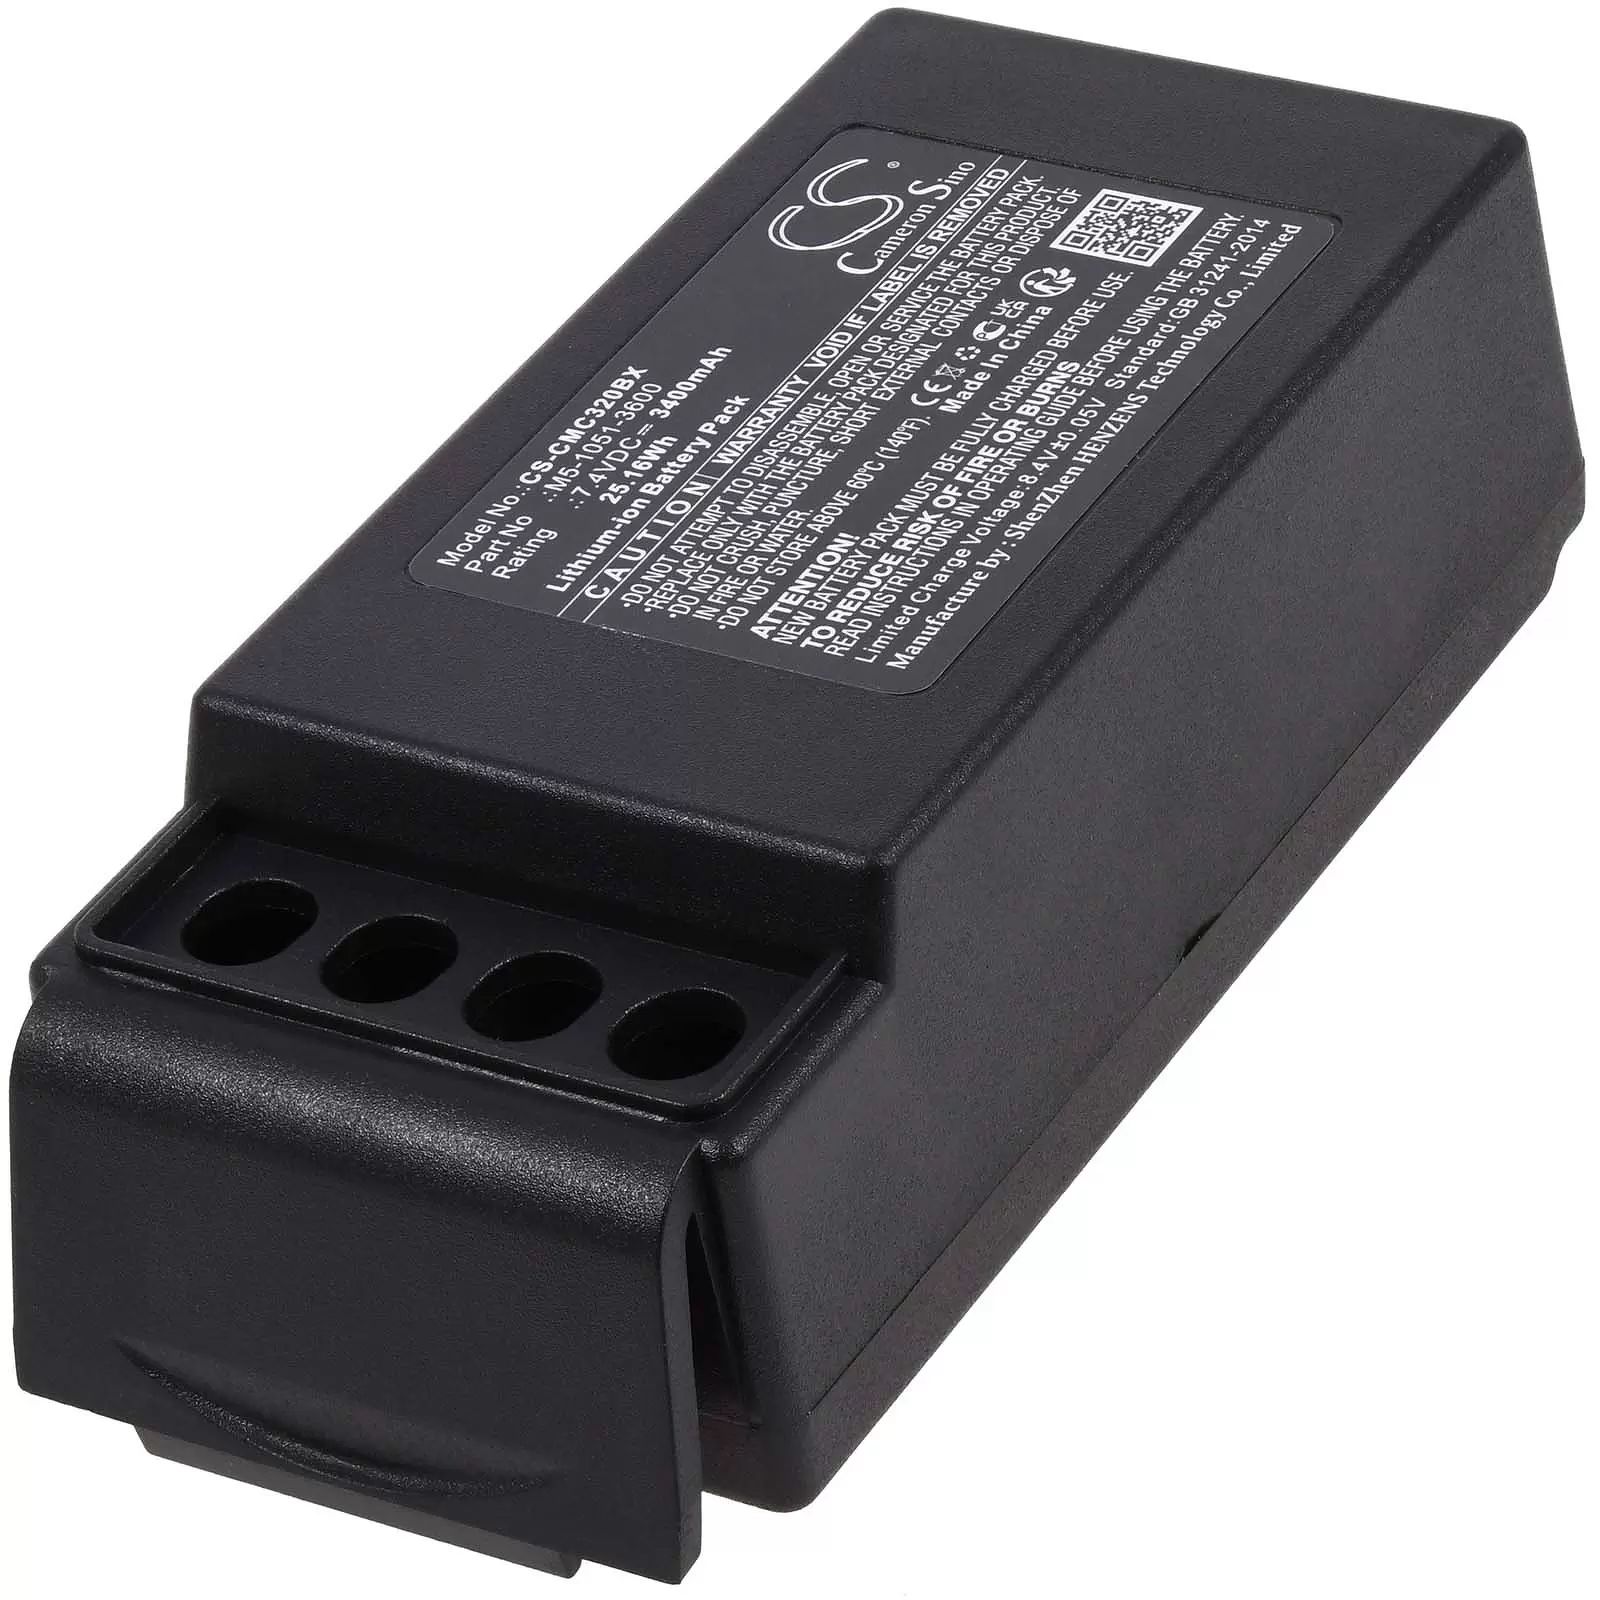 Powerakku passend für Kran-Funkfernsteuerung Cavotec MC-3000,MC-3, Typ M5-1051-3600, nur 2 Kontakte - 7,4V - 3400 mAh